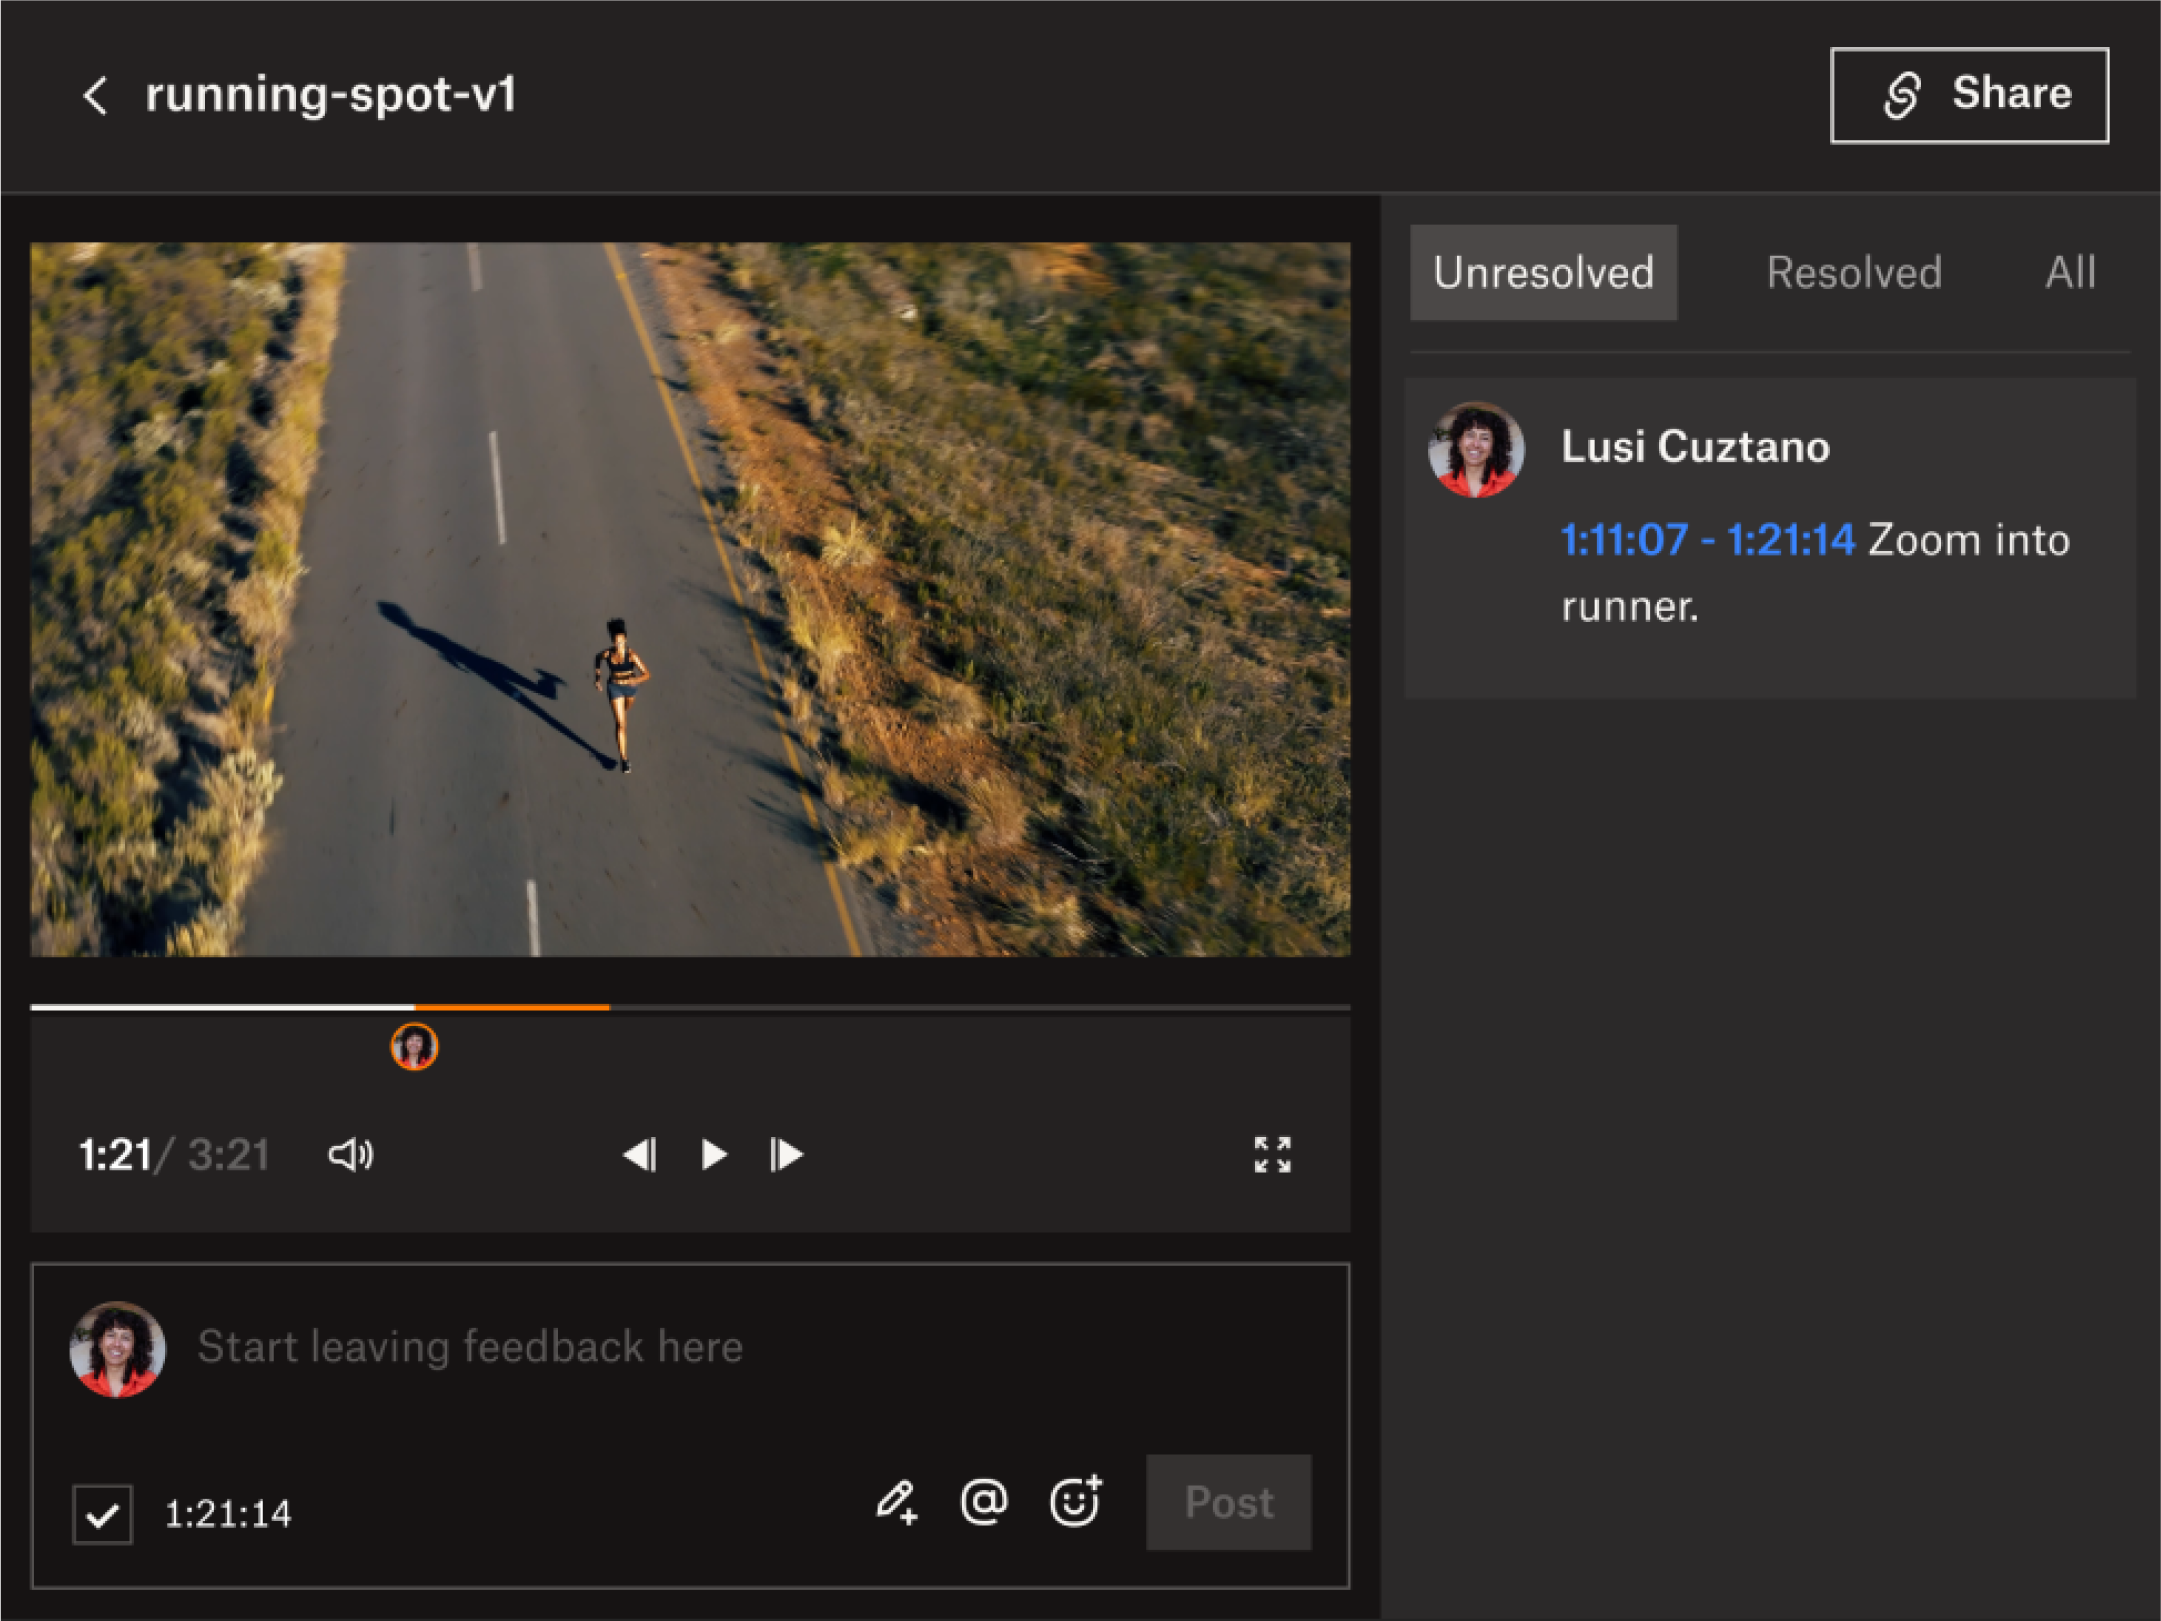 Візуальне зображення можливостей коментування з часовим діапазоном у Dropbox Replay, інструменті відеовідгуку.